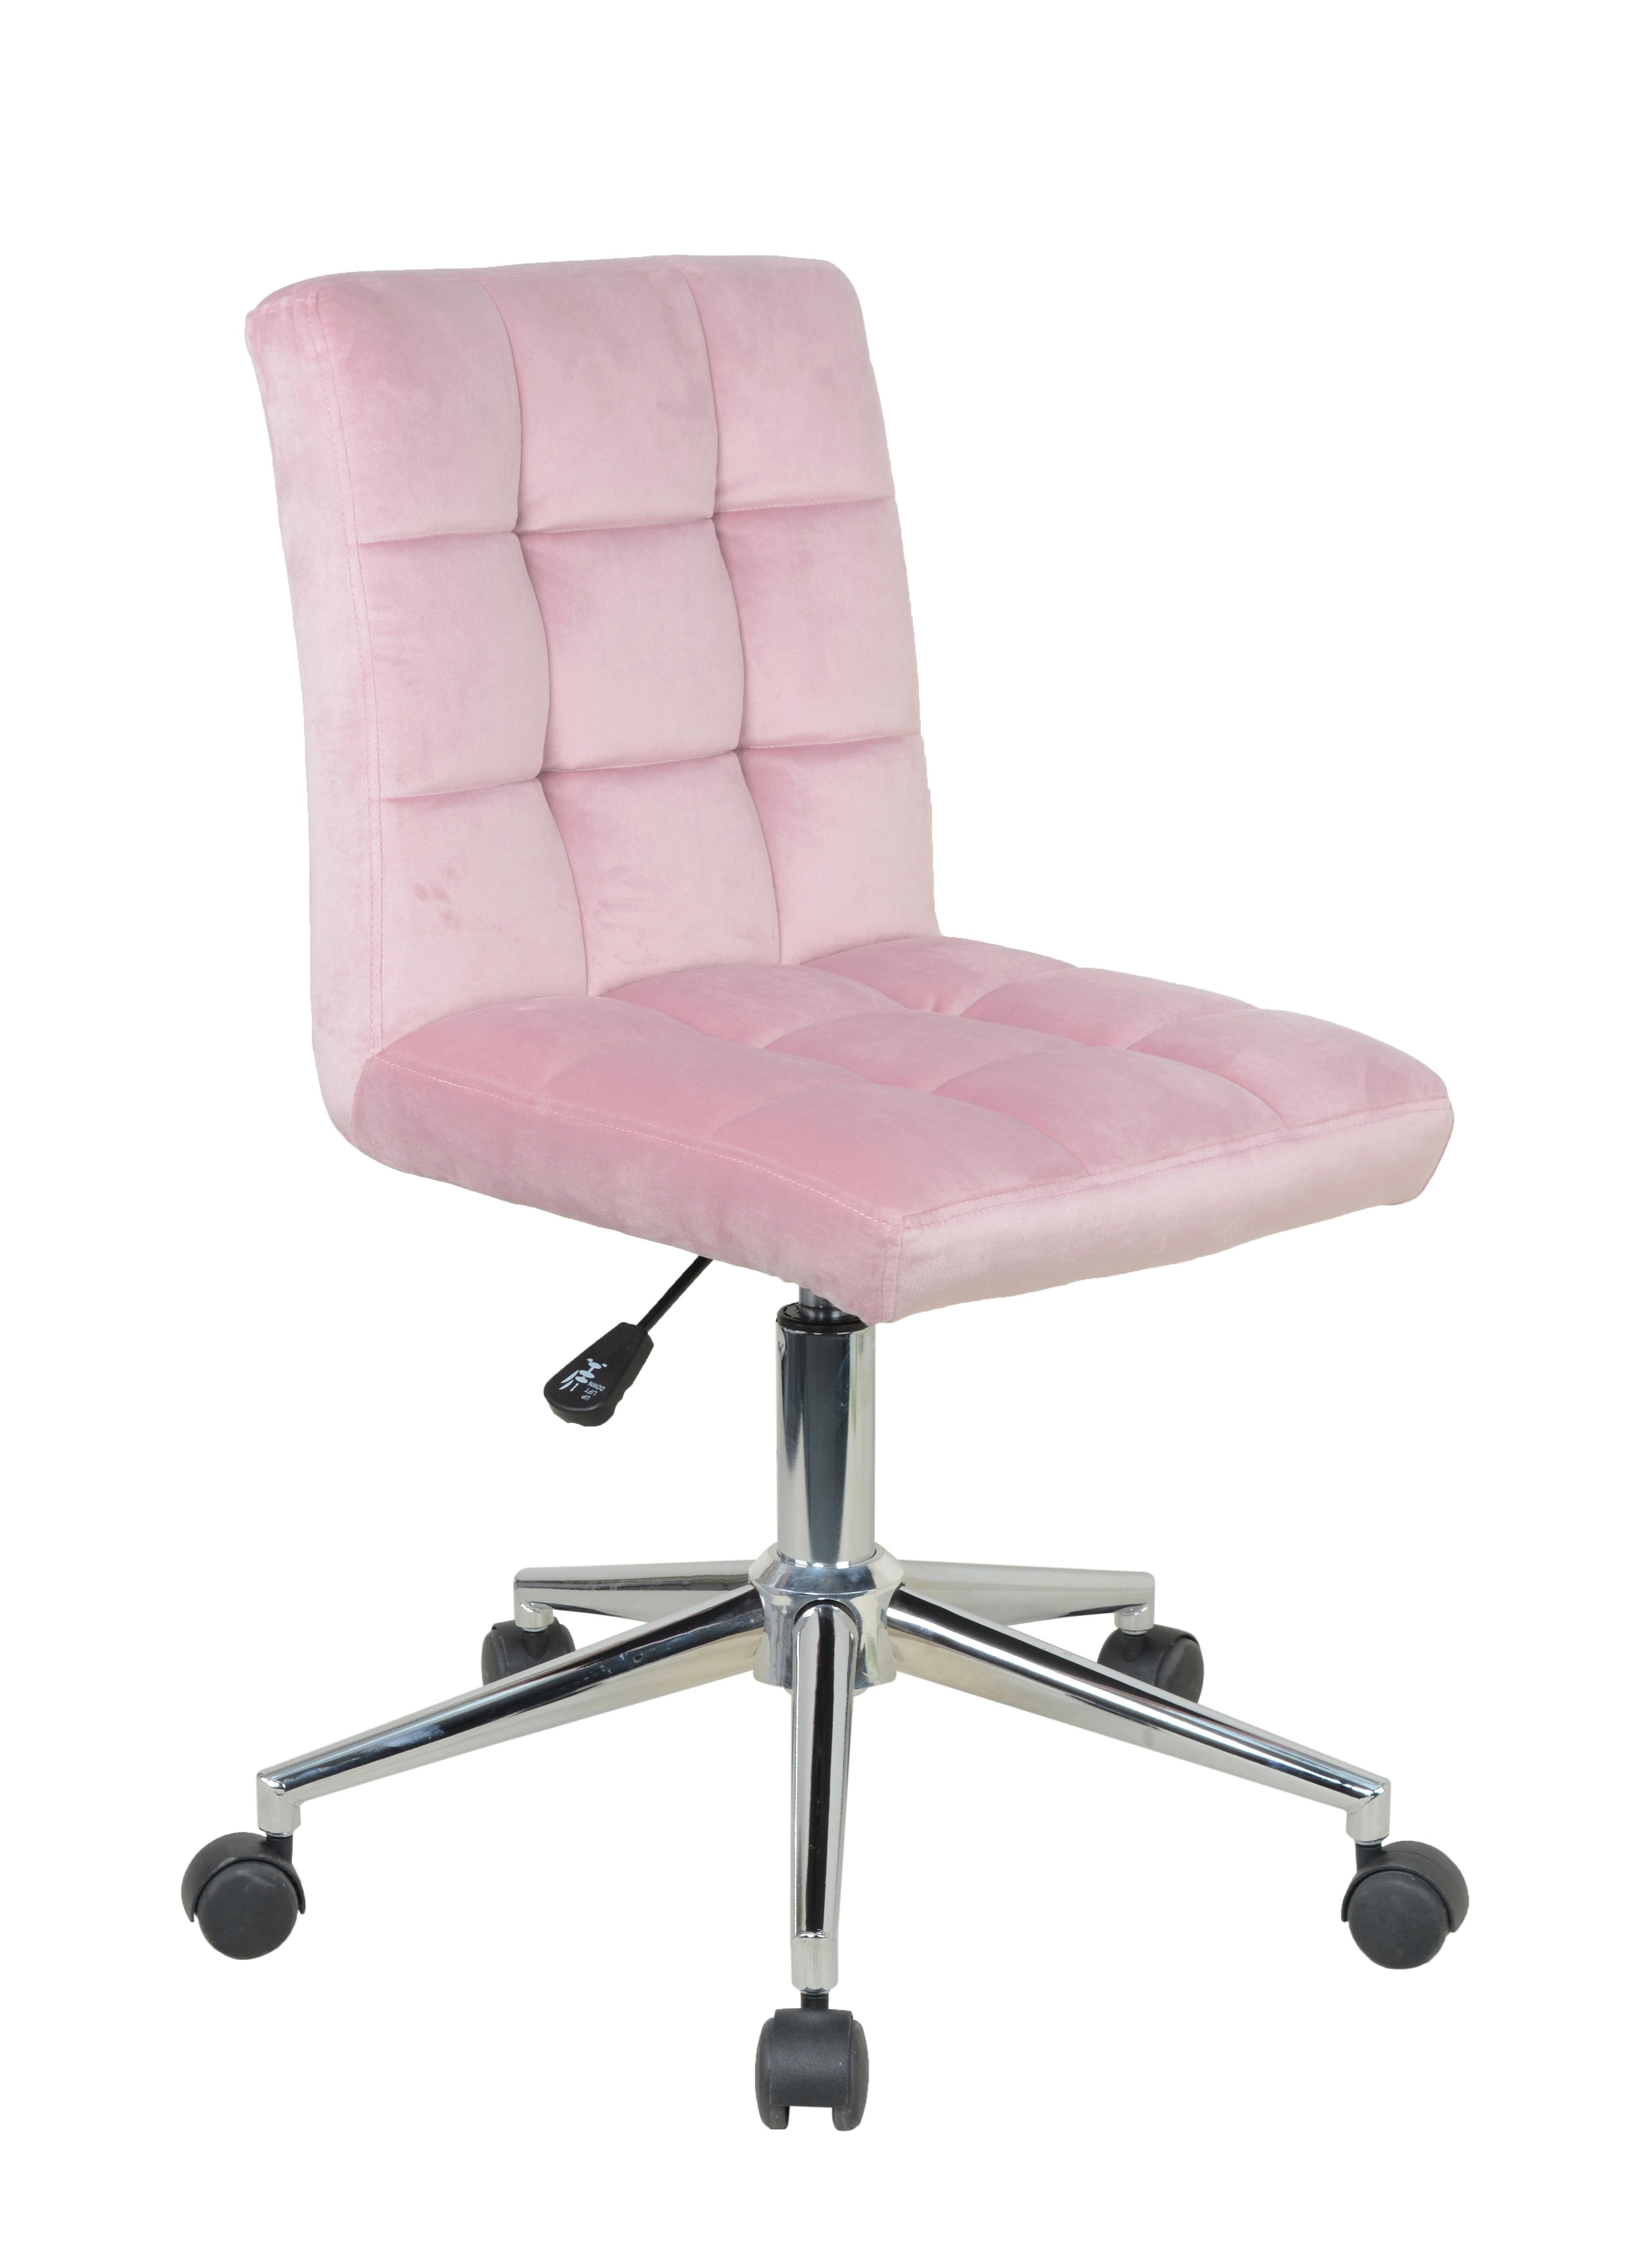 Dětská Židle Easy - pink/růžová, Moderní, kov/dřevo (41/79,5-89/54cm) - Modern Living